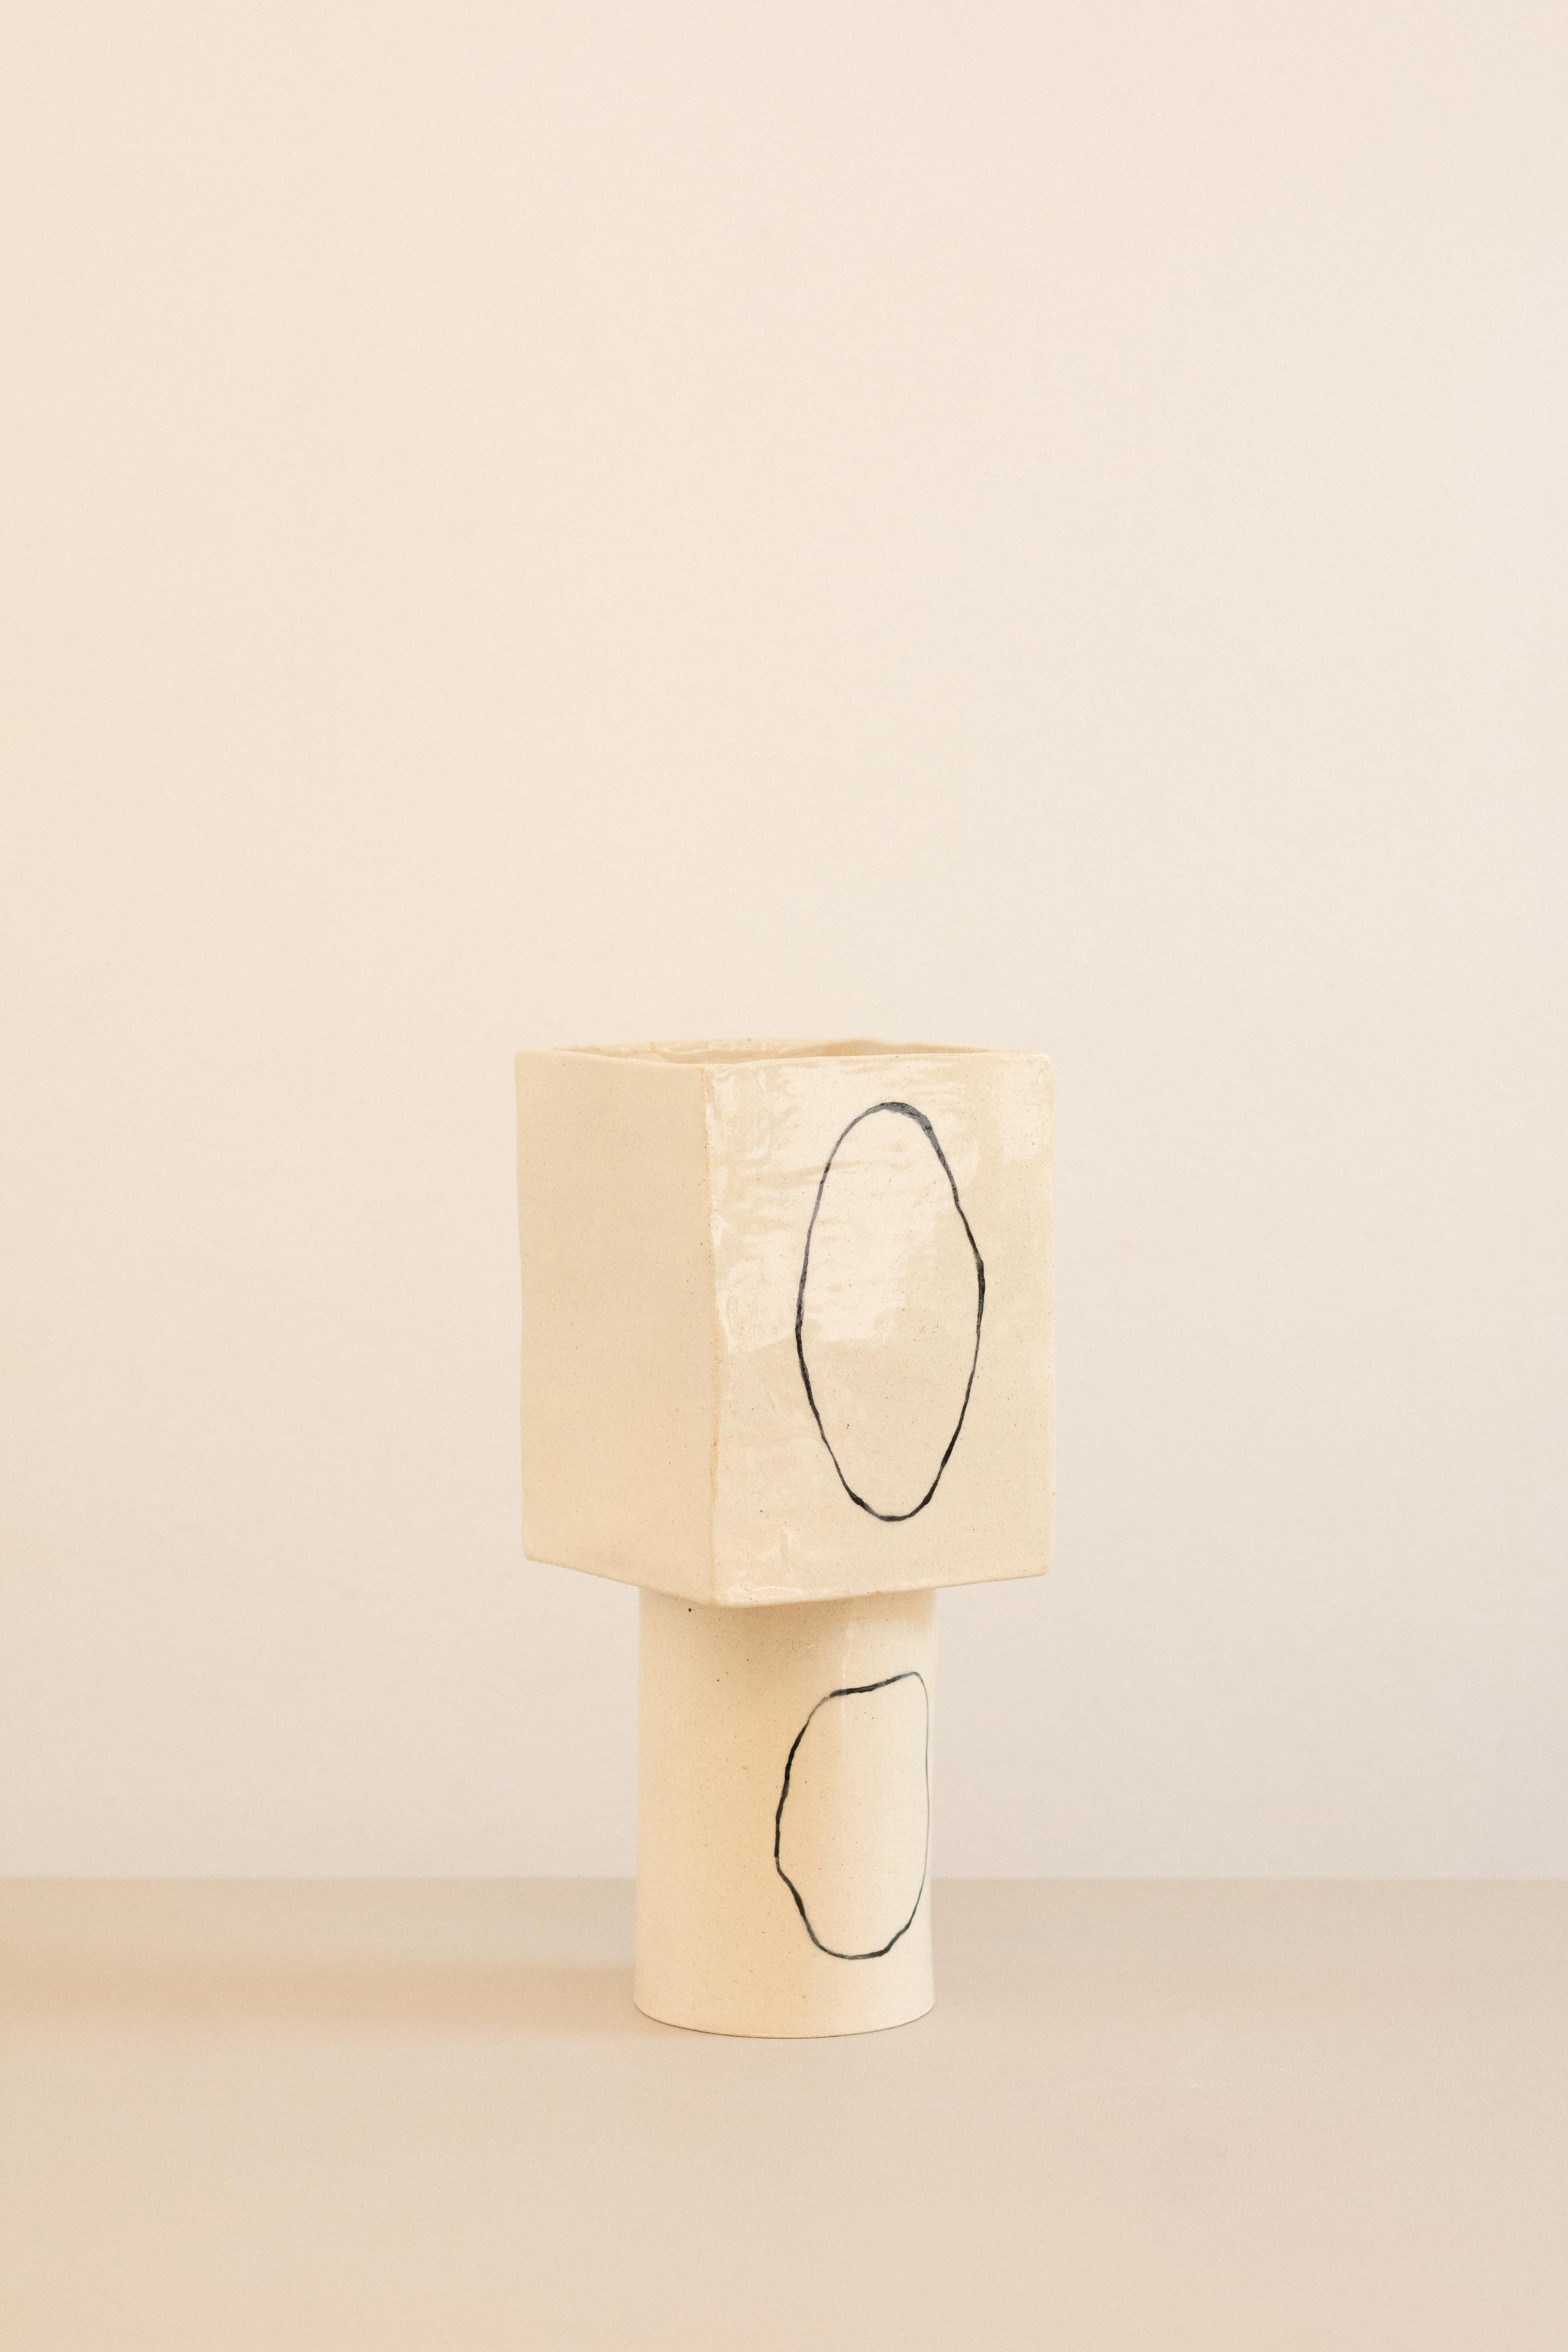 Ceramic contemporary white ceramic vase inspired in Miró - ZERO serie - obj01, brazil  For Sale